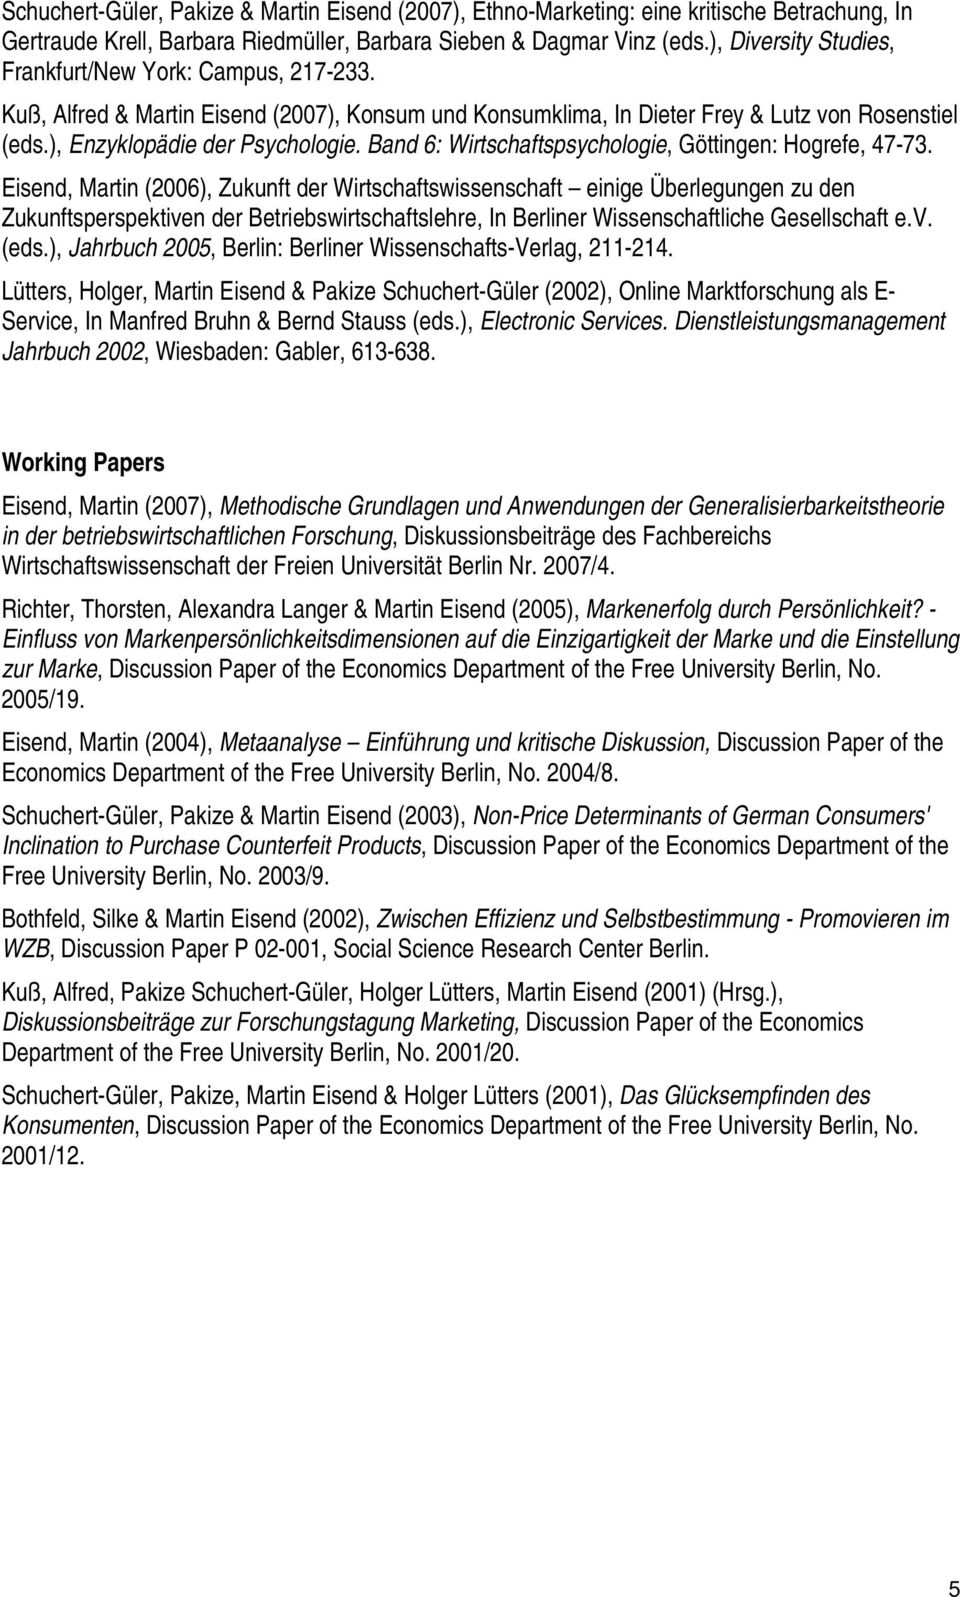 Band 6: Wirtschaftspsychologie, Göttingen: Hogrefe, 47-73.